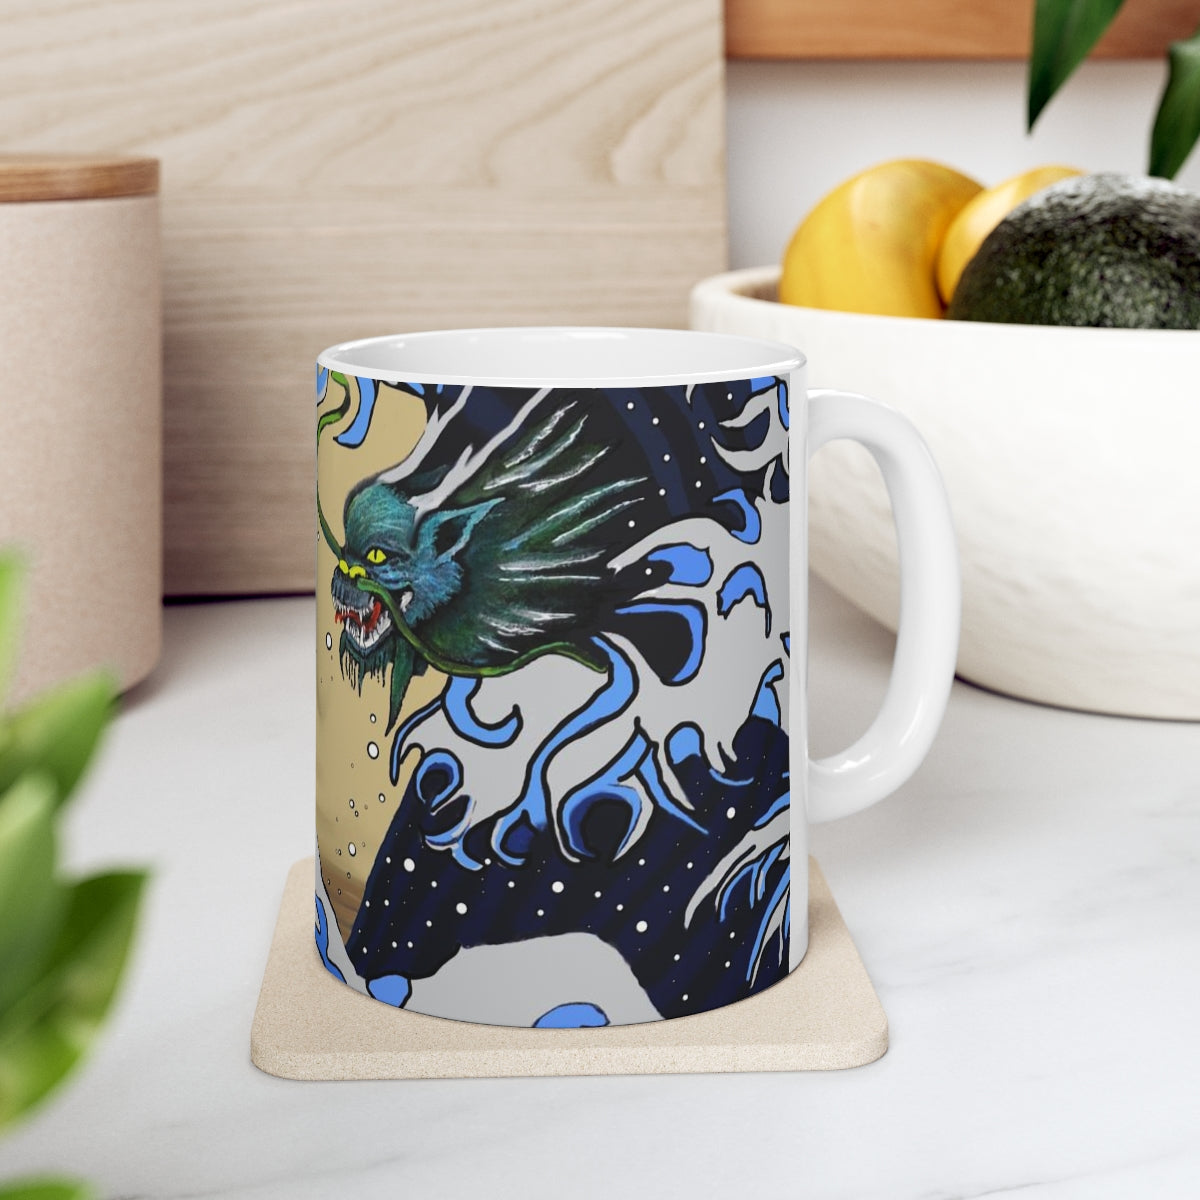 Earth & Sea Battle Ceramic Mug